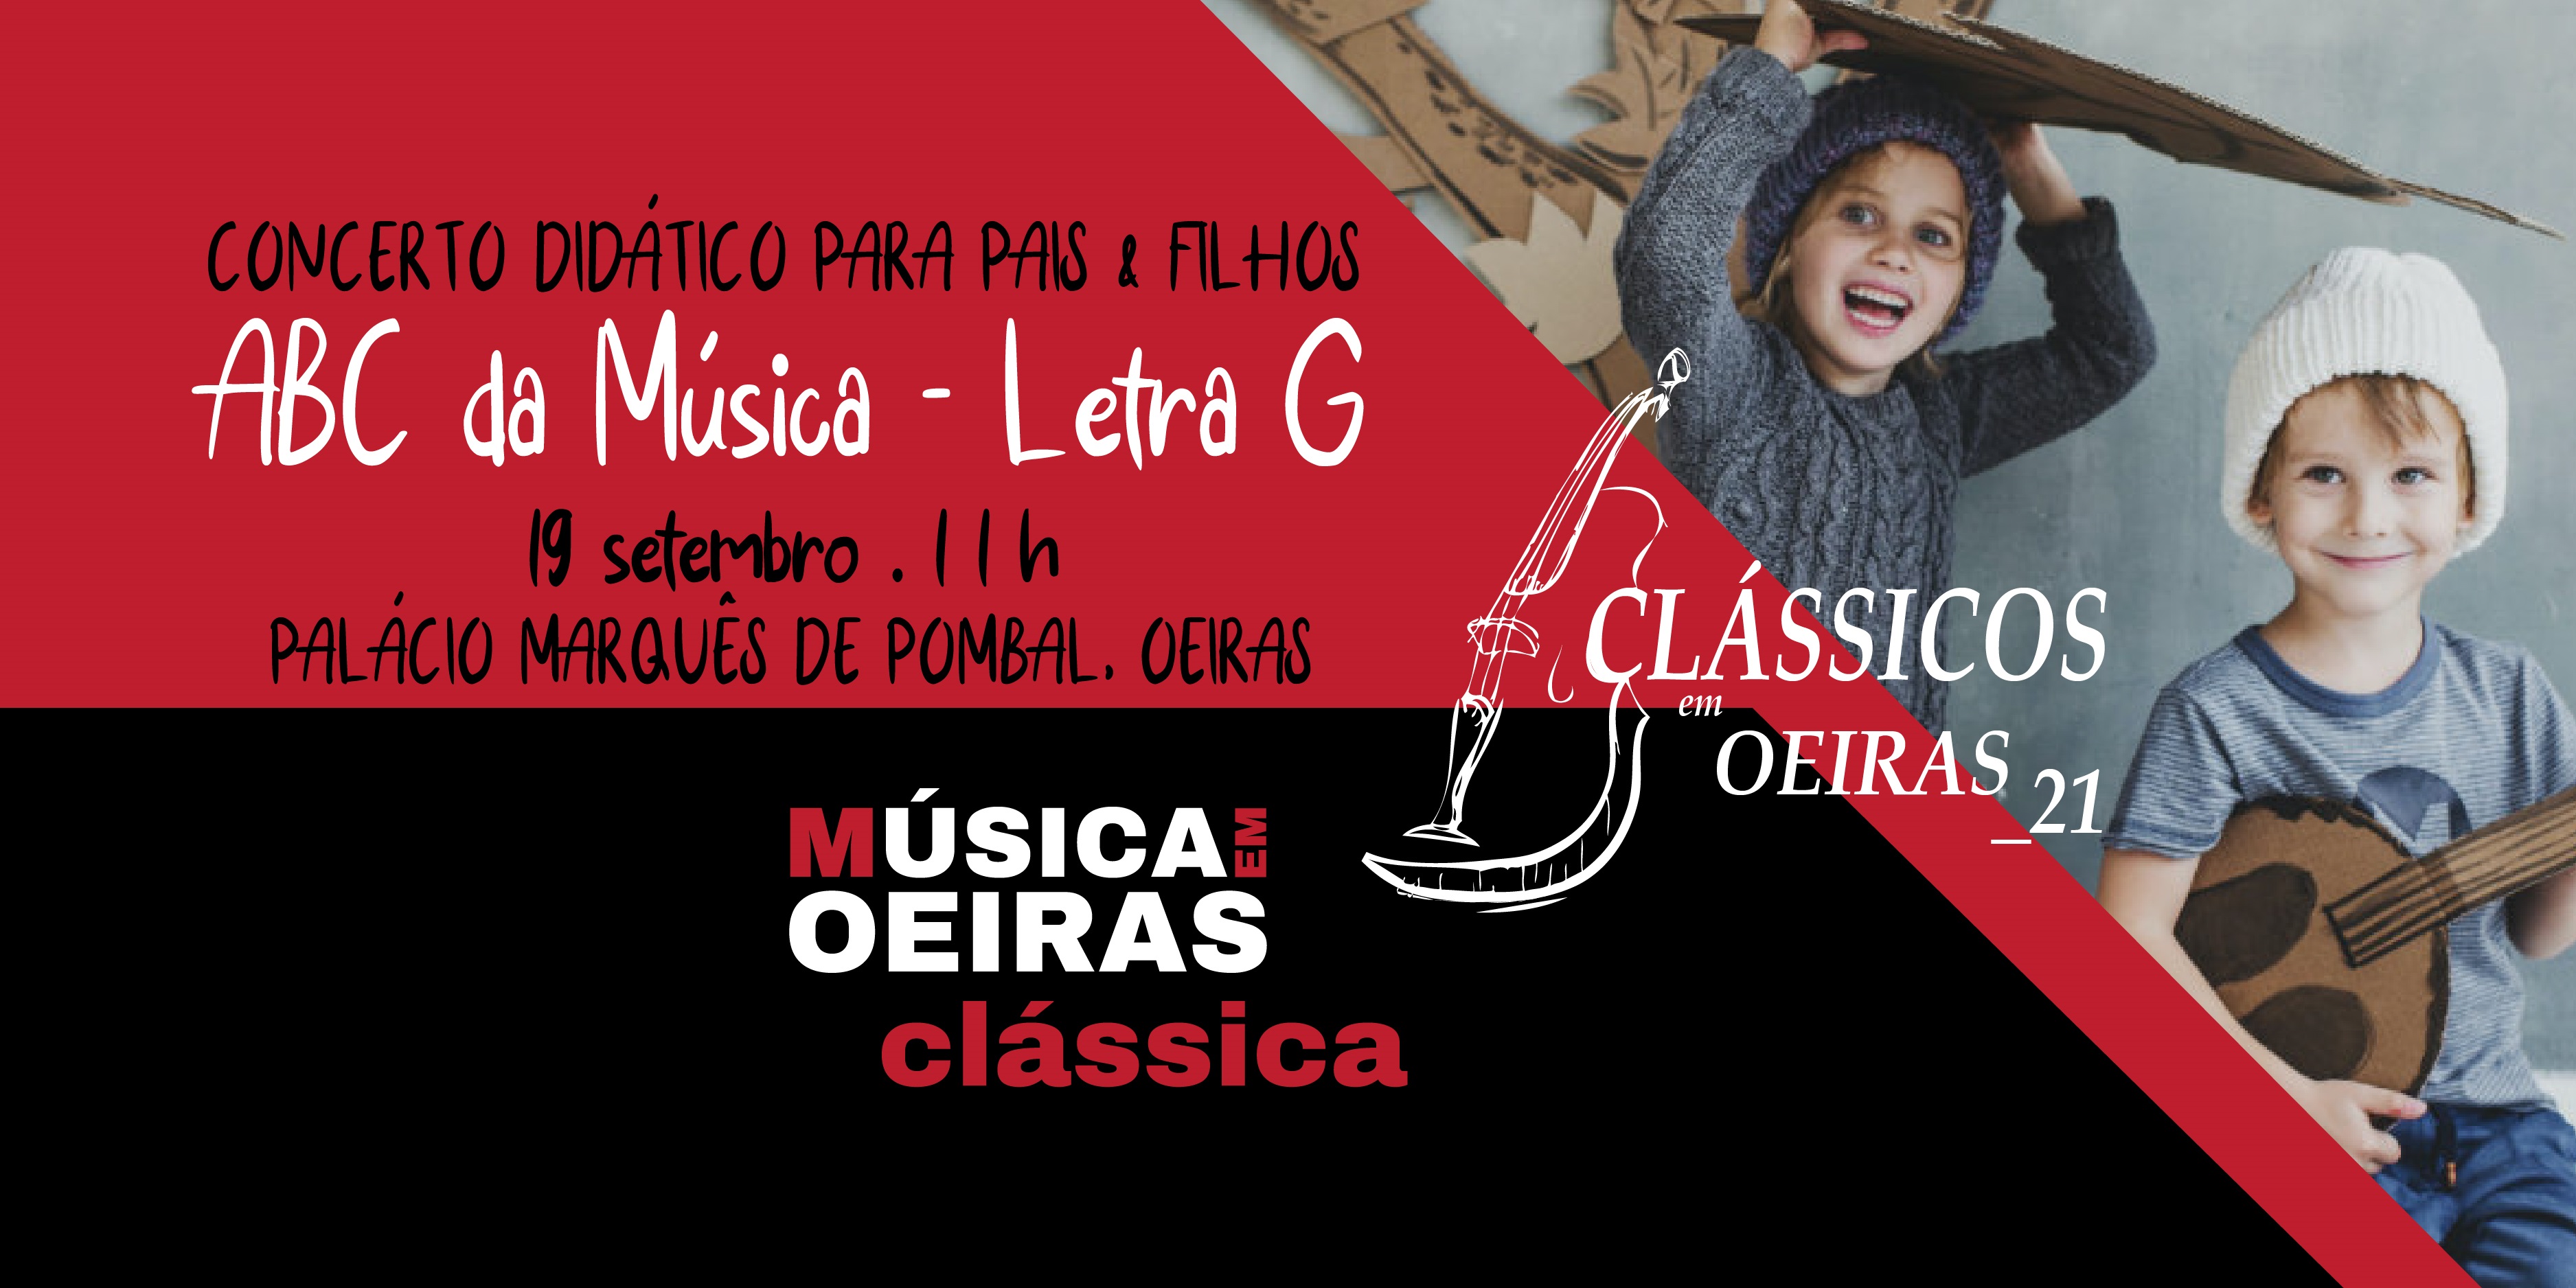 ABC da Música - Letra G: Concerto Didático para Pais e Filhos